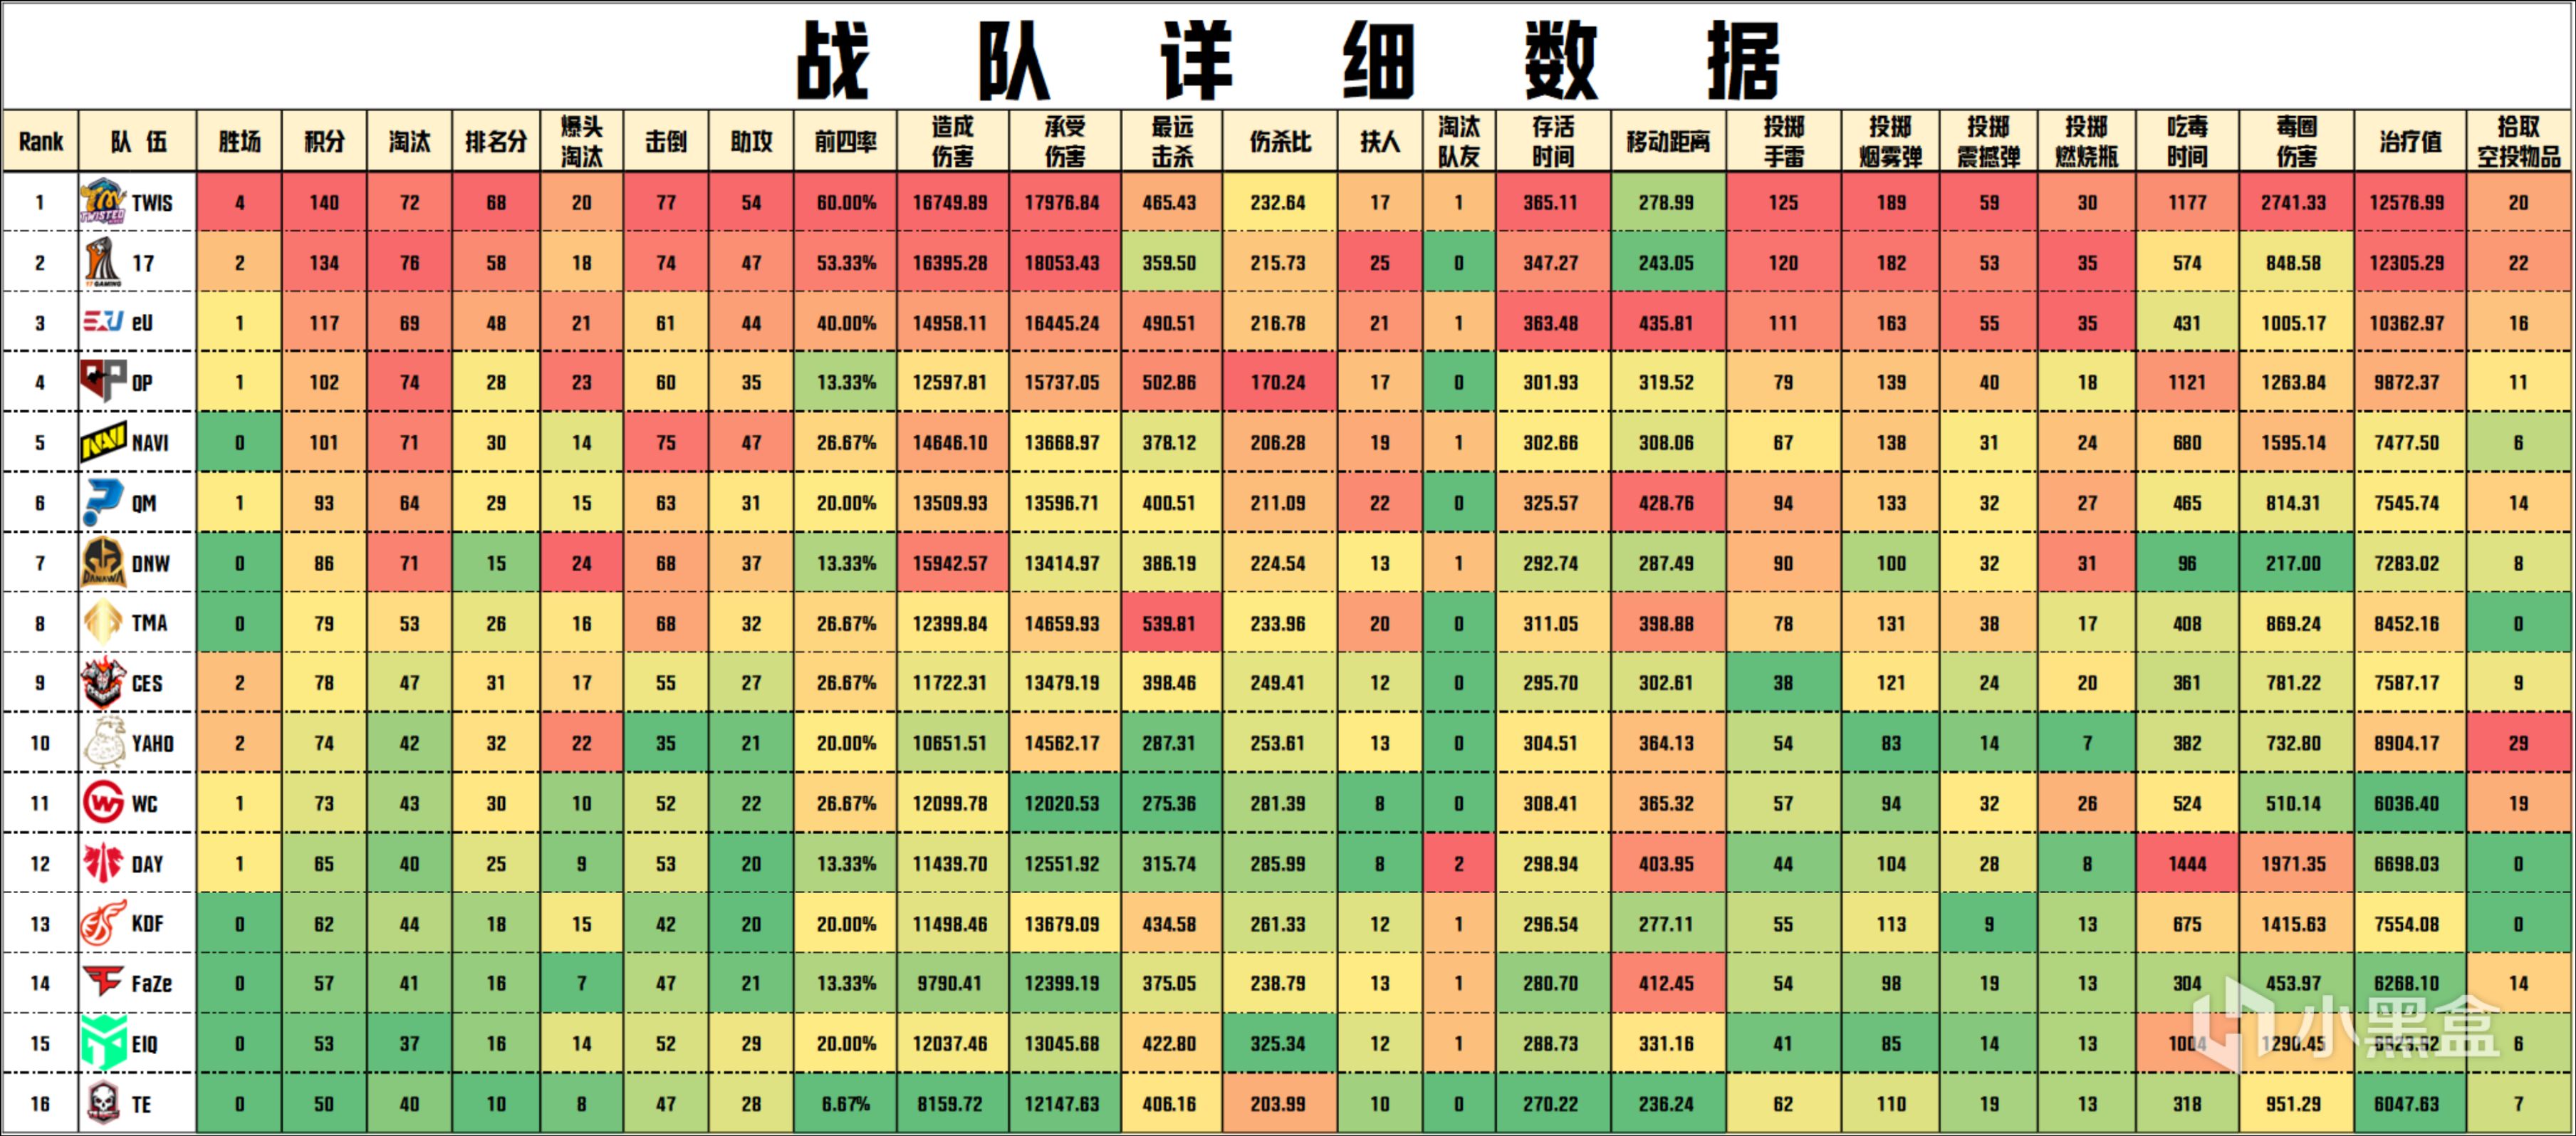 【數據流】PGC決賽D3/4,TWIS 140分來到榜首,DNW_seoul戰神31淘汰-第3張